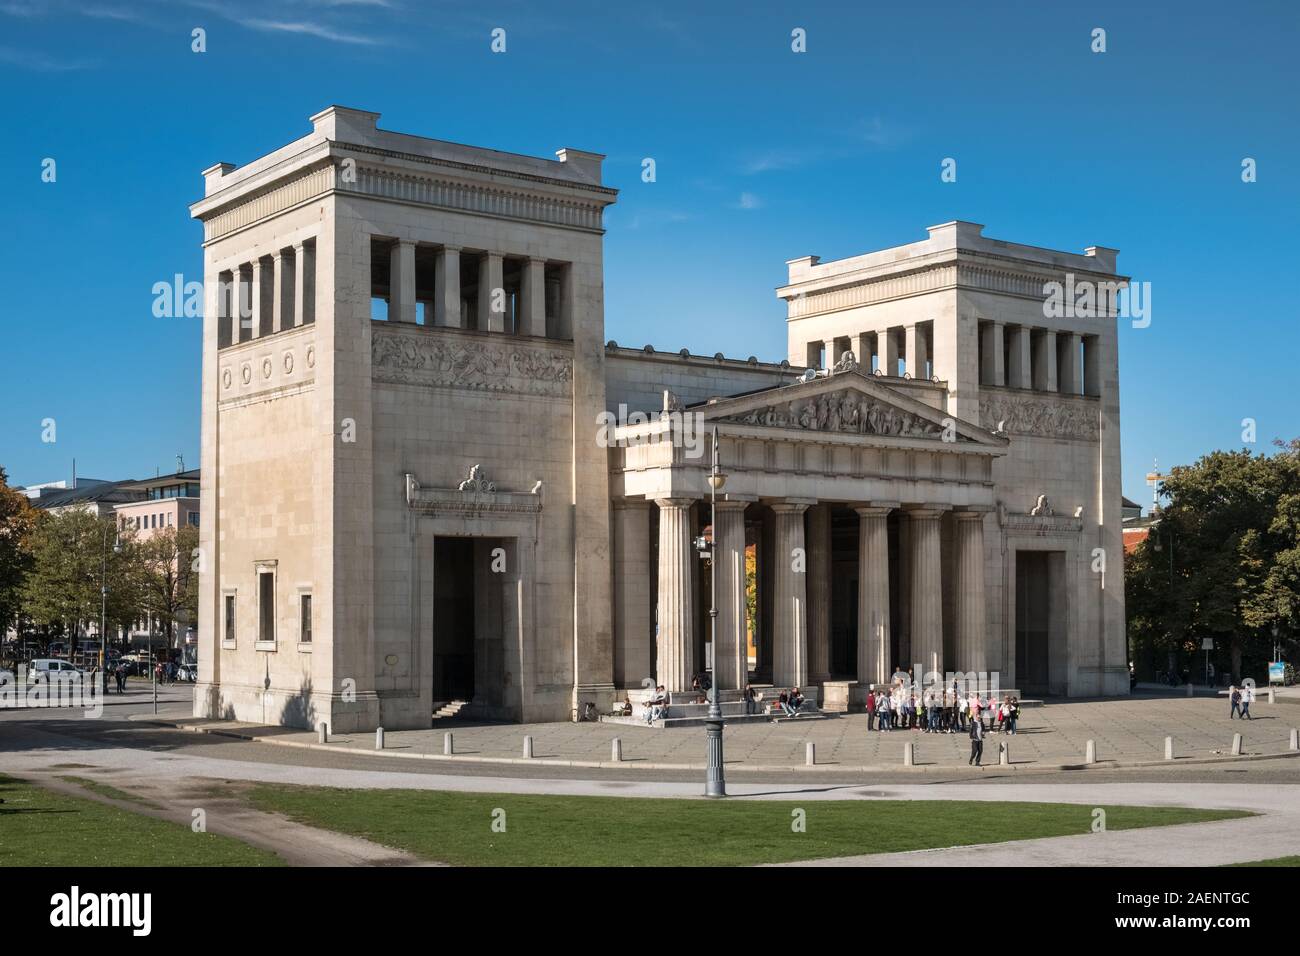 El exterior del edificio la Propilea, una ciudad dórica gate al oeste de Konigsplatz y completado en 1862, Munich, Baviera, Alemania Foto de stock